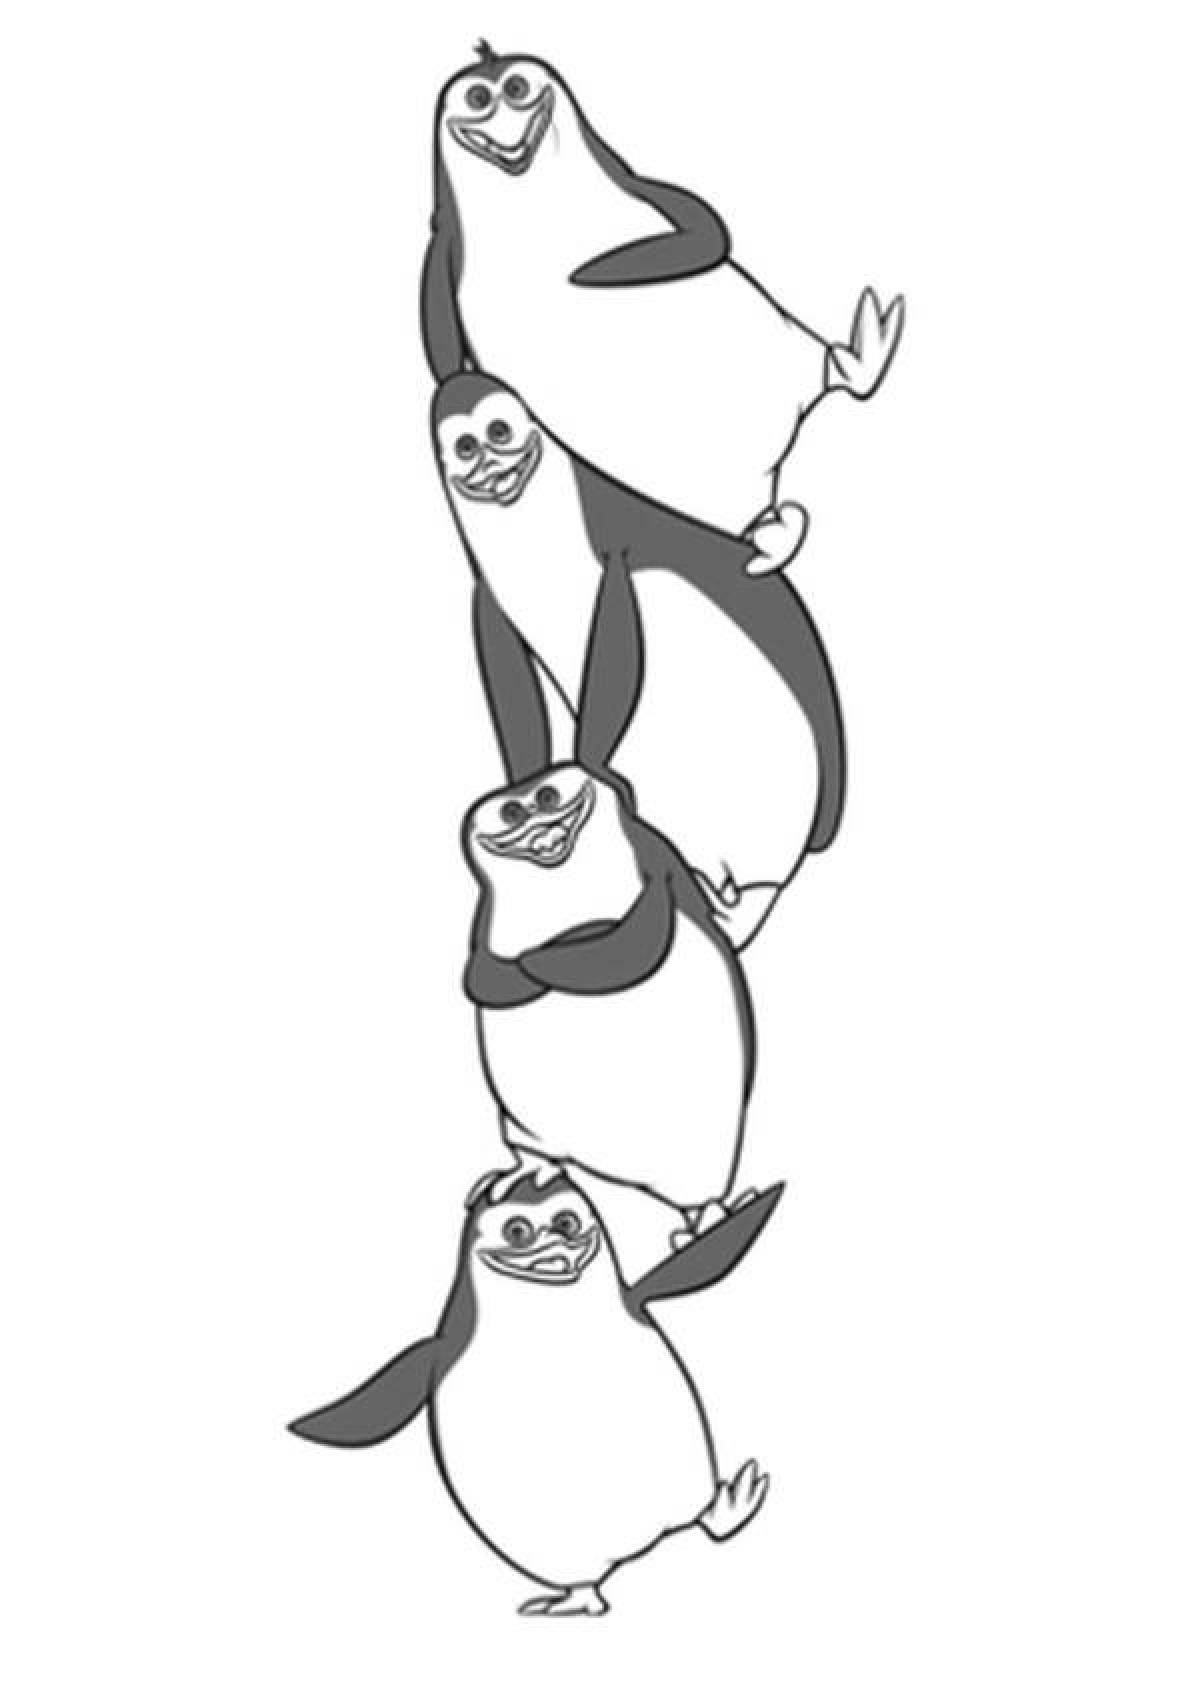 Madagascar bubble penguins